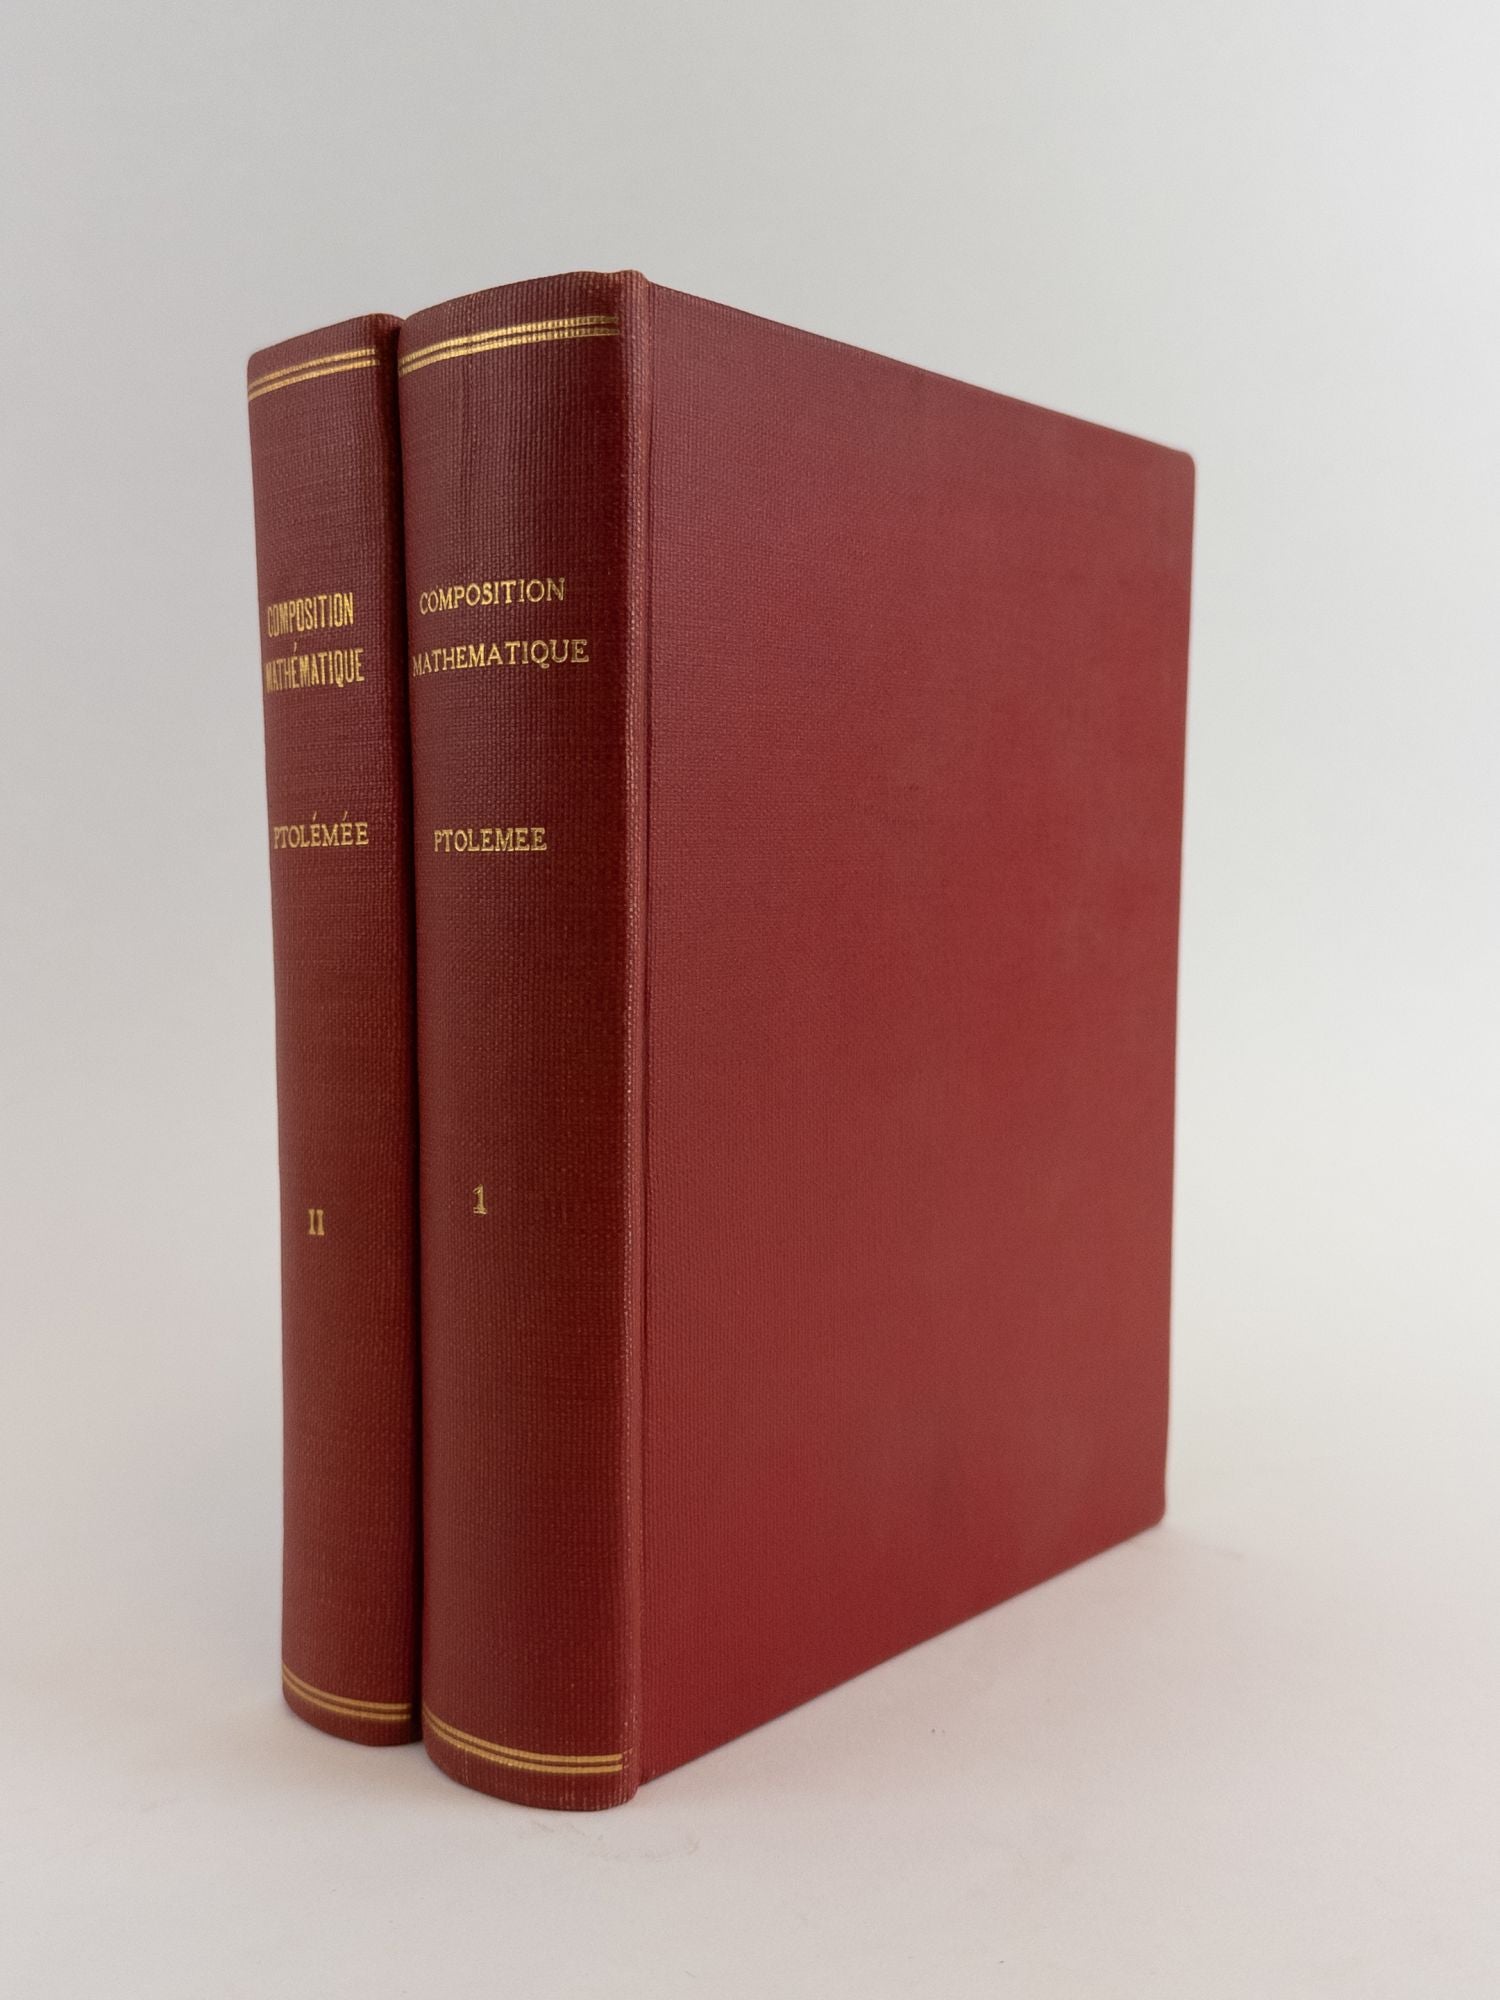 Product Image for COMPOSITION MATHÉMATIQUE DE CLAUDE PTOLÉMÉE [Two Volumes]